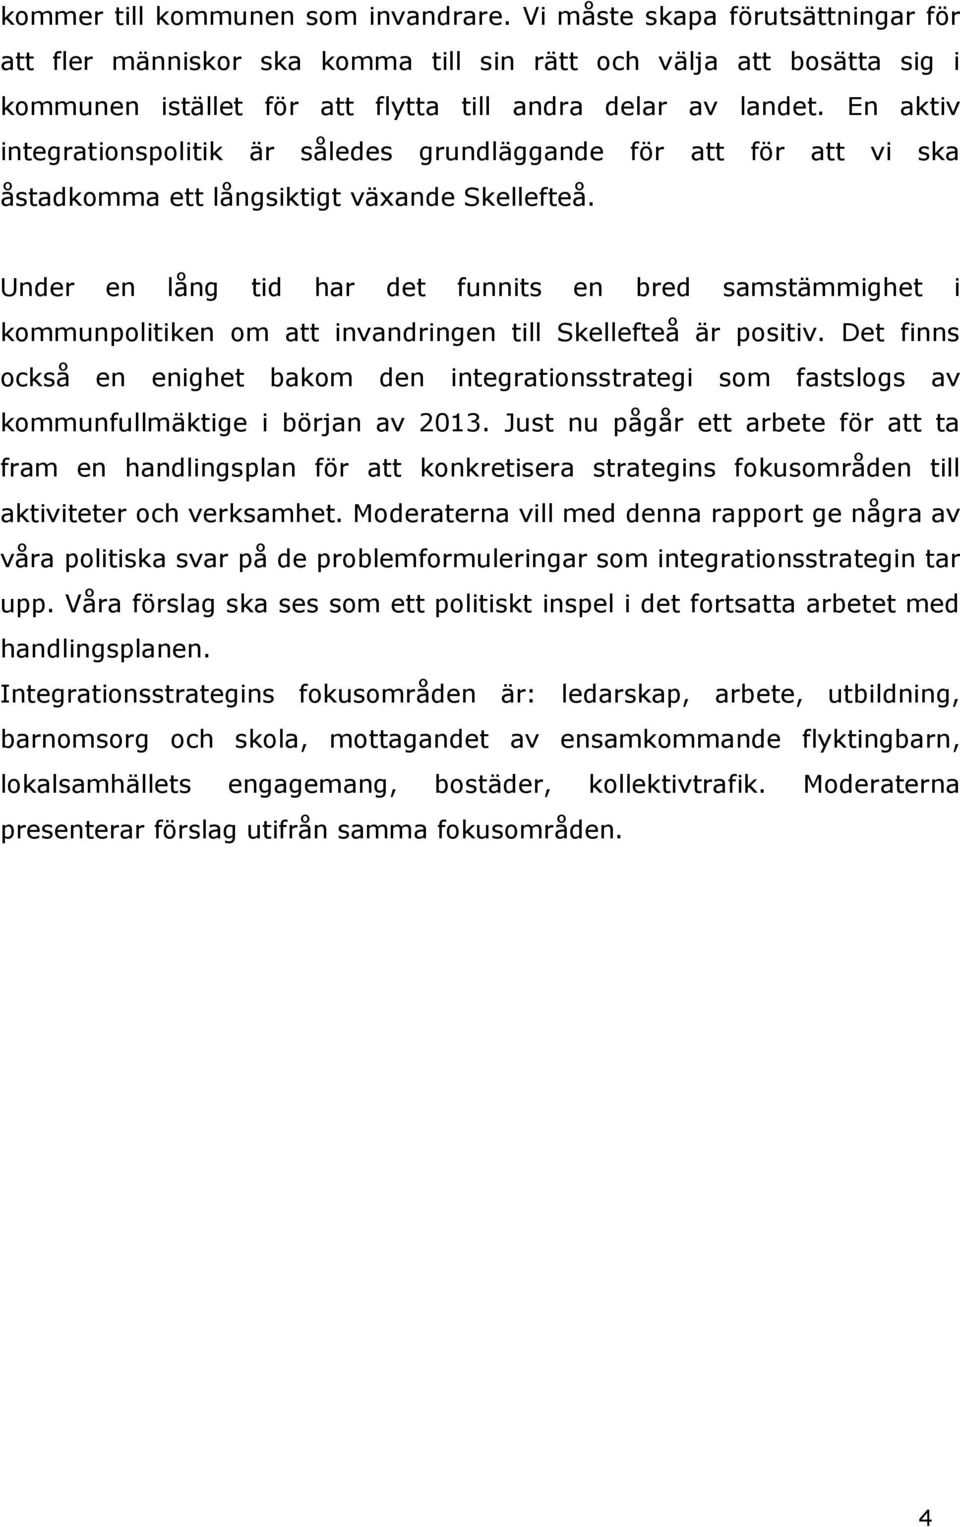 En aktiv integrationspolitik är således grundläggande för att för att vi ska åstadkomma ett långsiktigt växande Skellefteå.